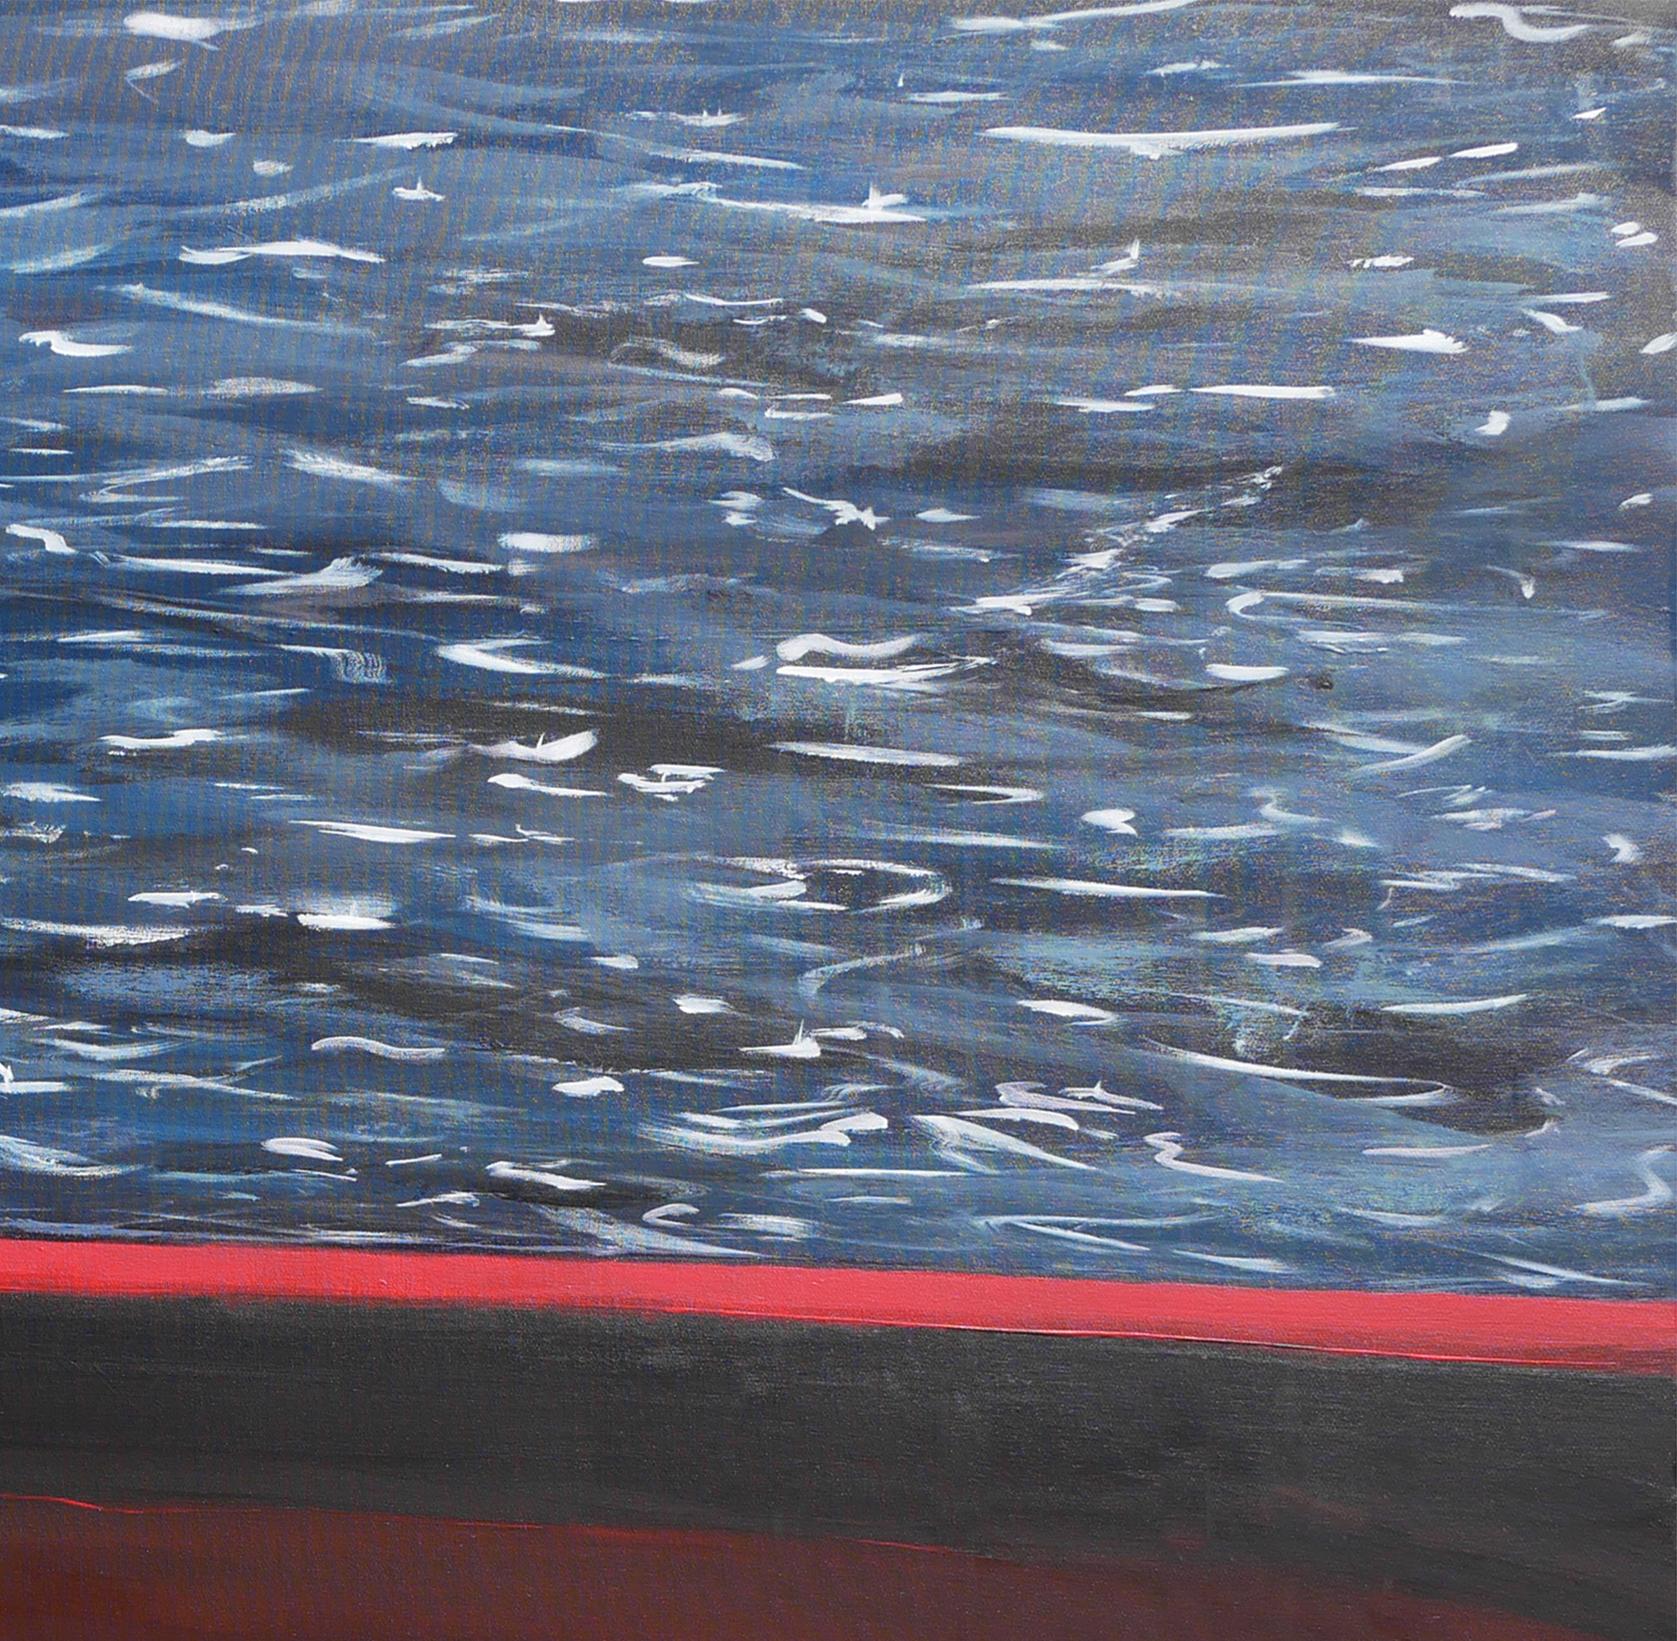 Paysage marin abstrait contemporain bleu et rouge de l'artiste Moisés Villafuerte, de Houston, au Texas. Cette peinture abstraite représente un grand bateau de sauvetage rouge avec le texte 